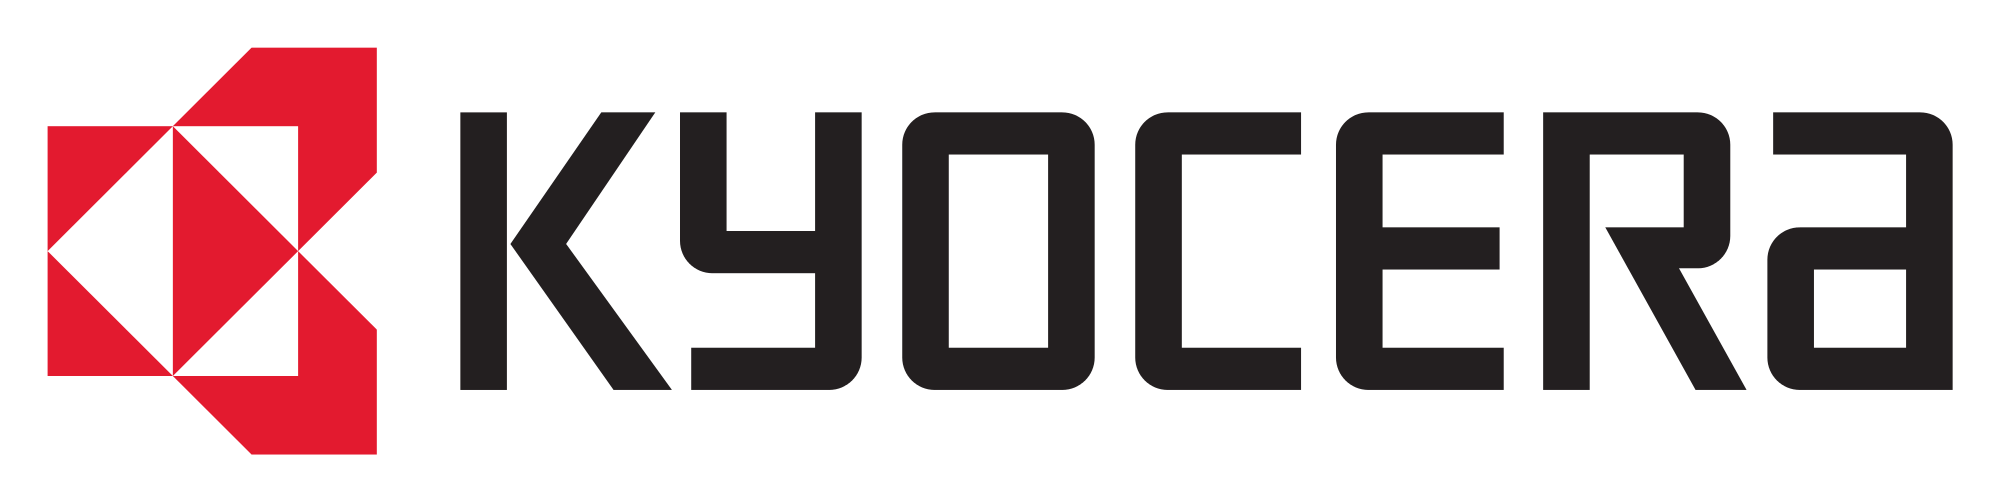 File:Kyocera logo.svg